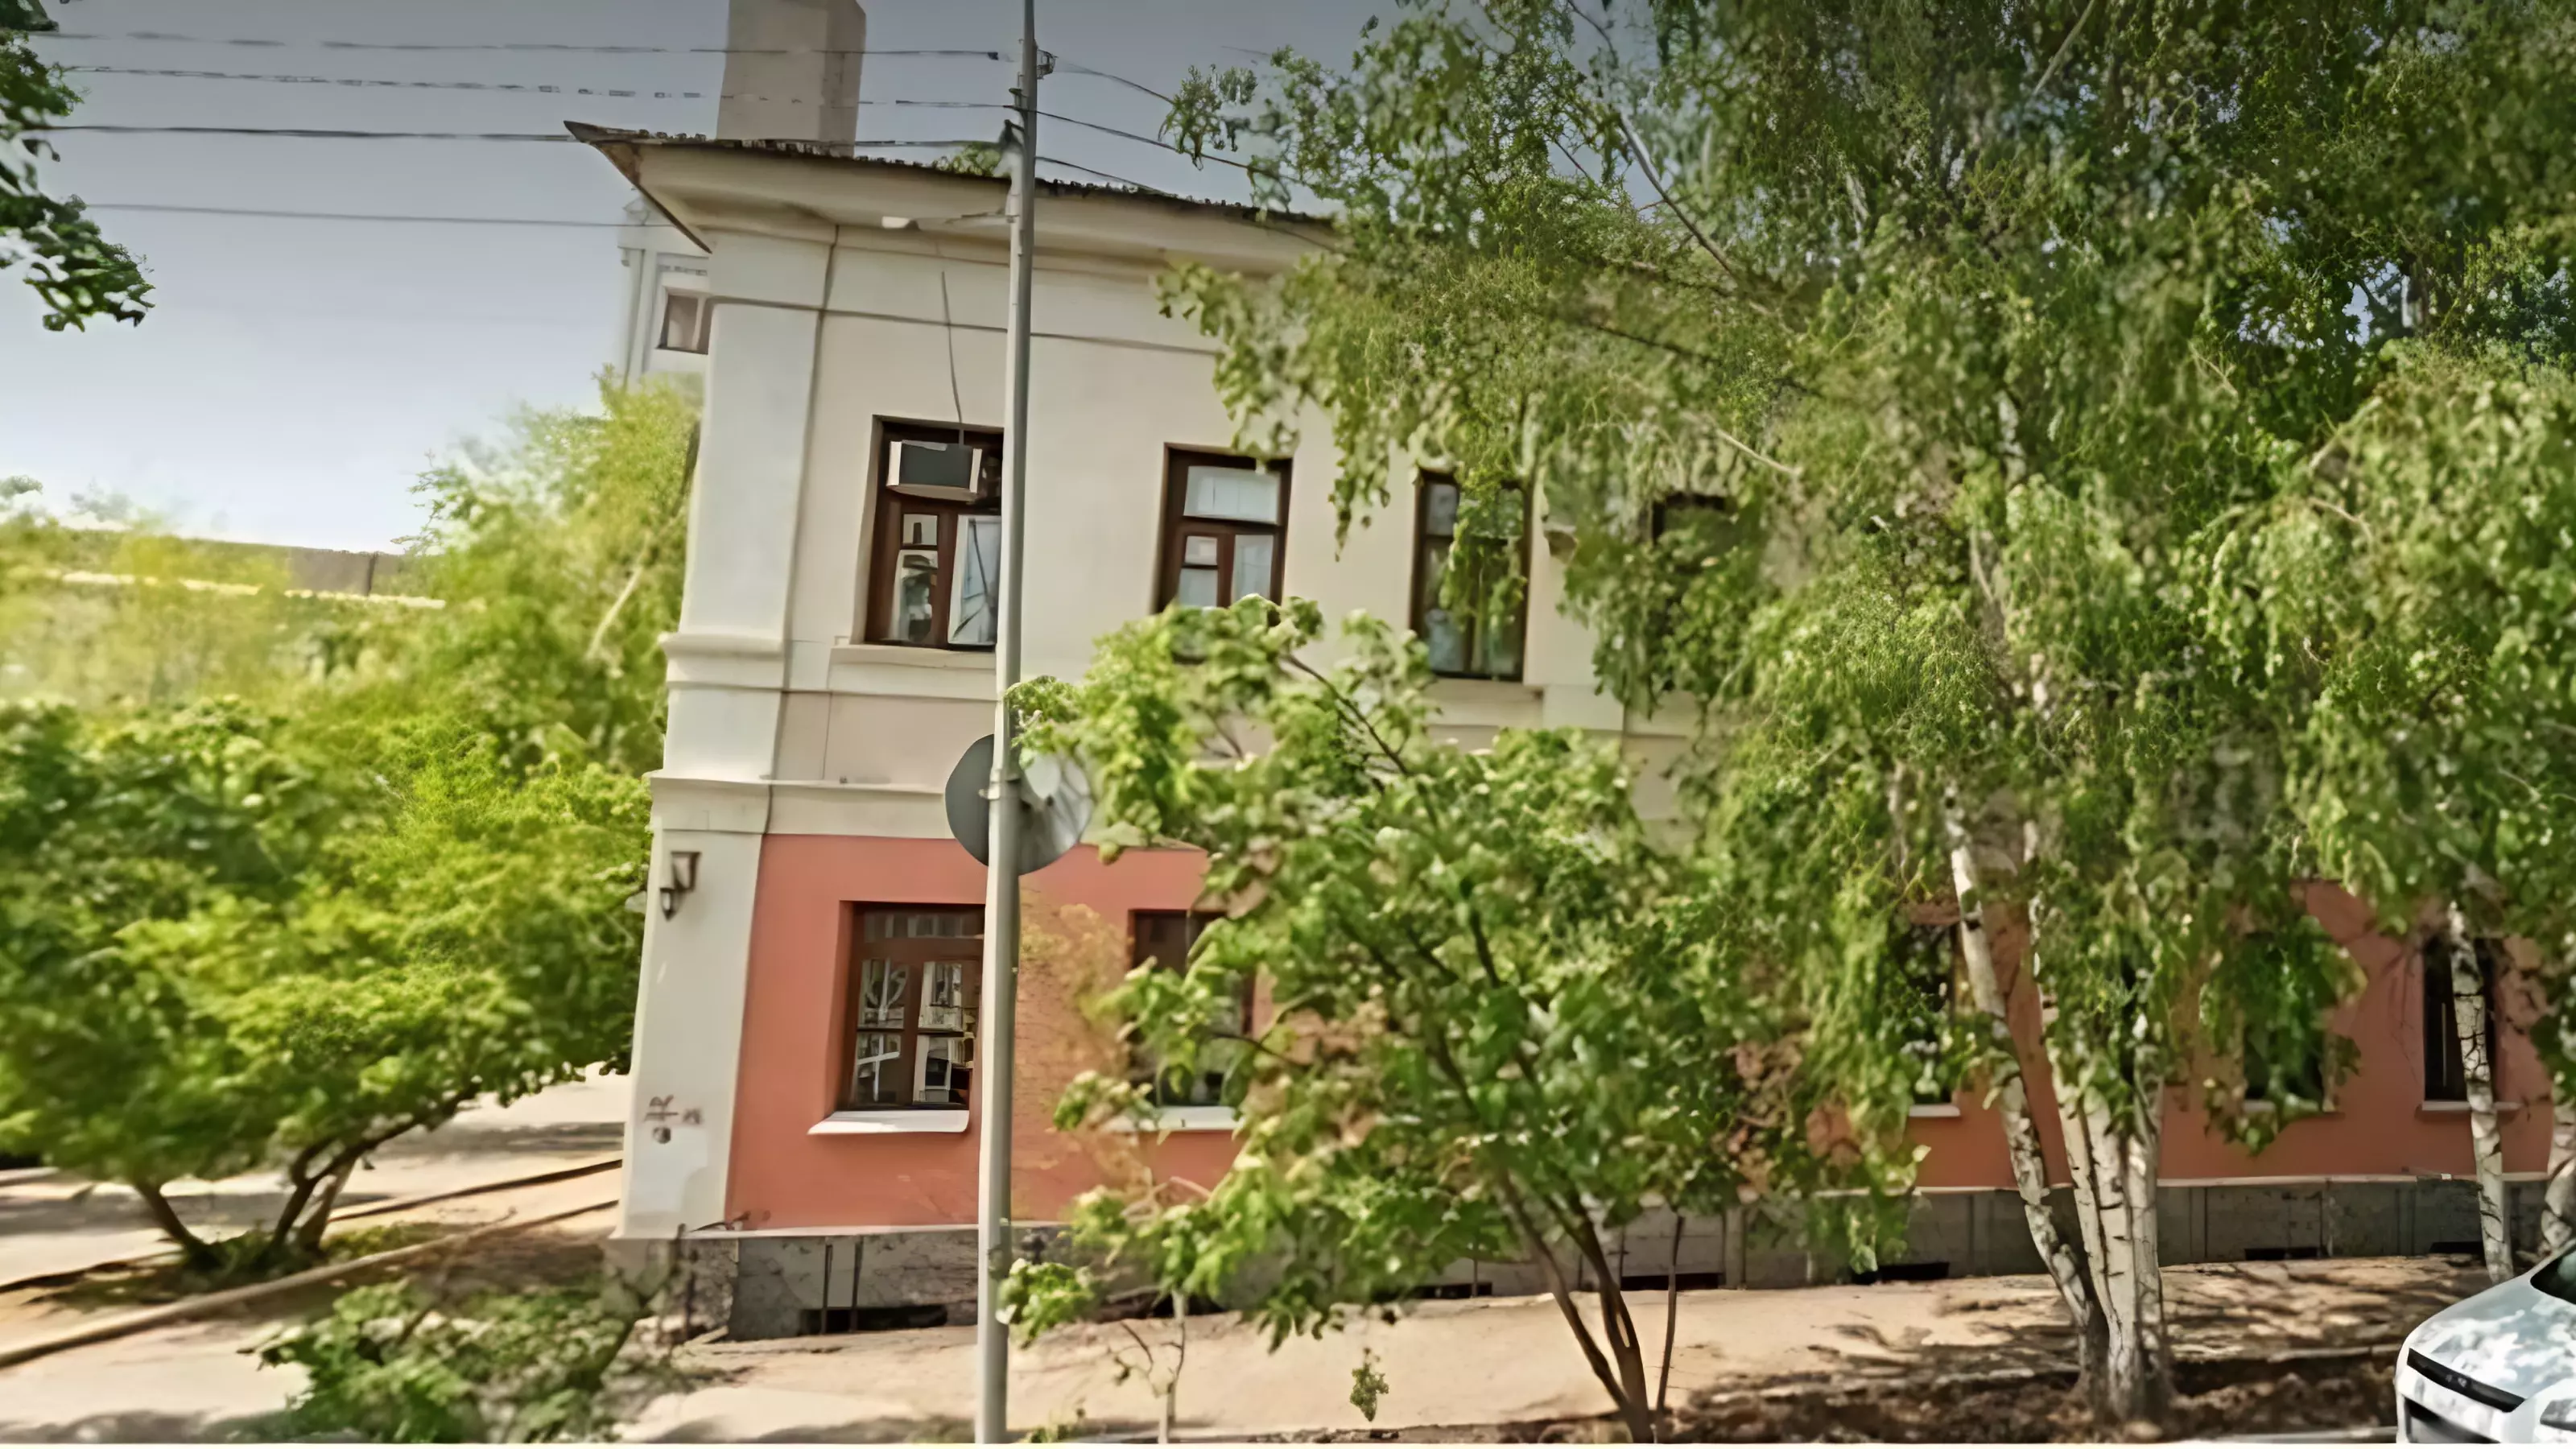 Здание «Тюремный замок купца Белова» находится на улице Фадеева в Оренбурге